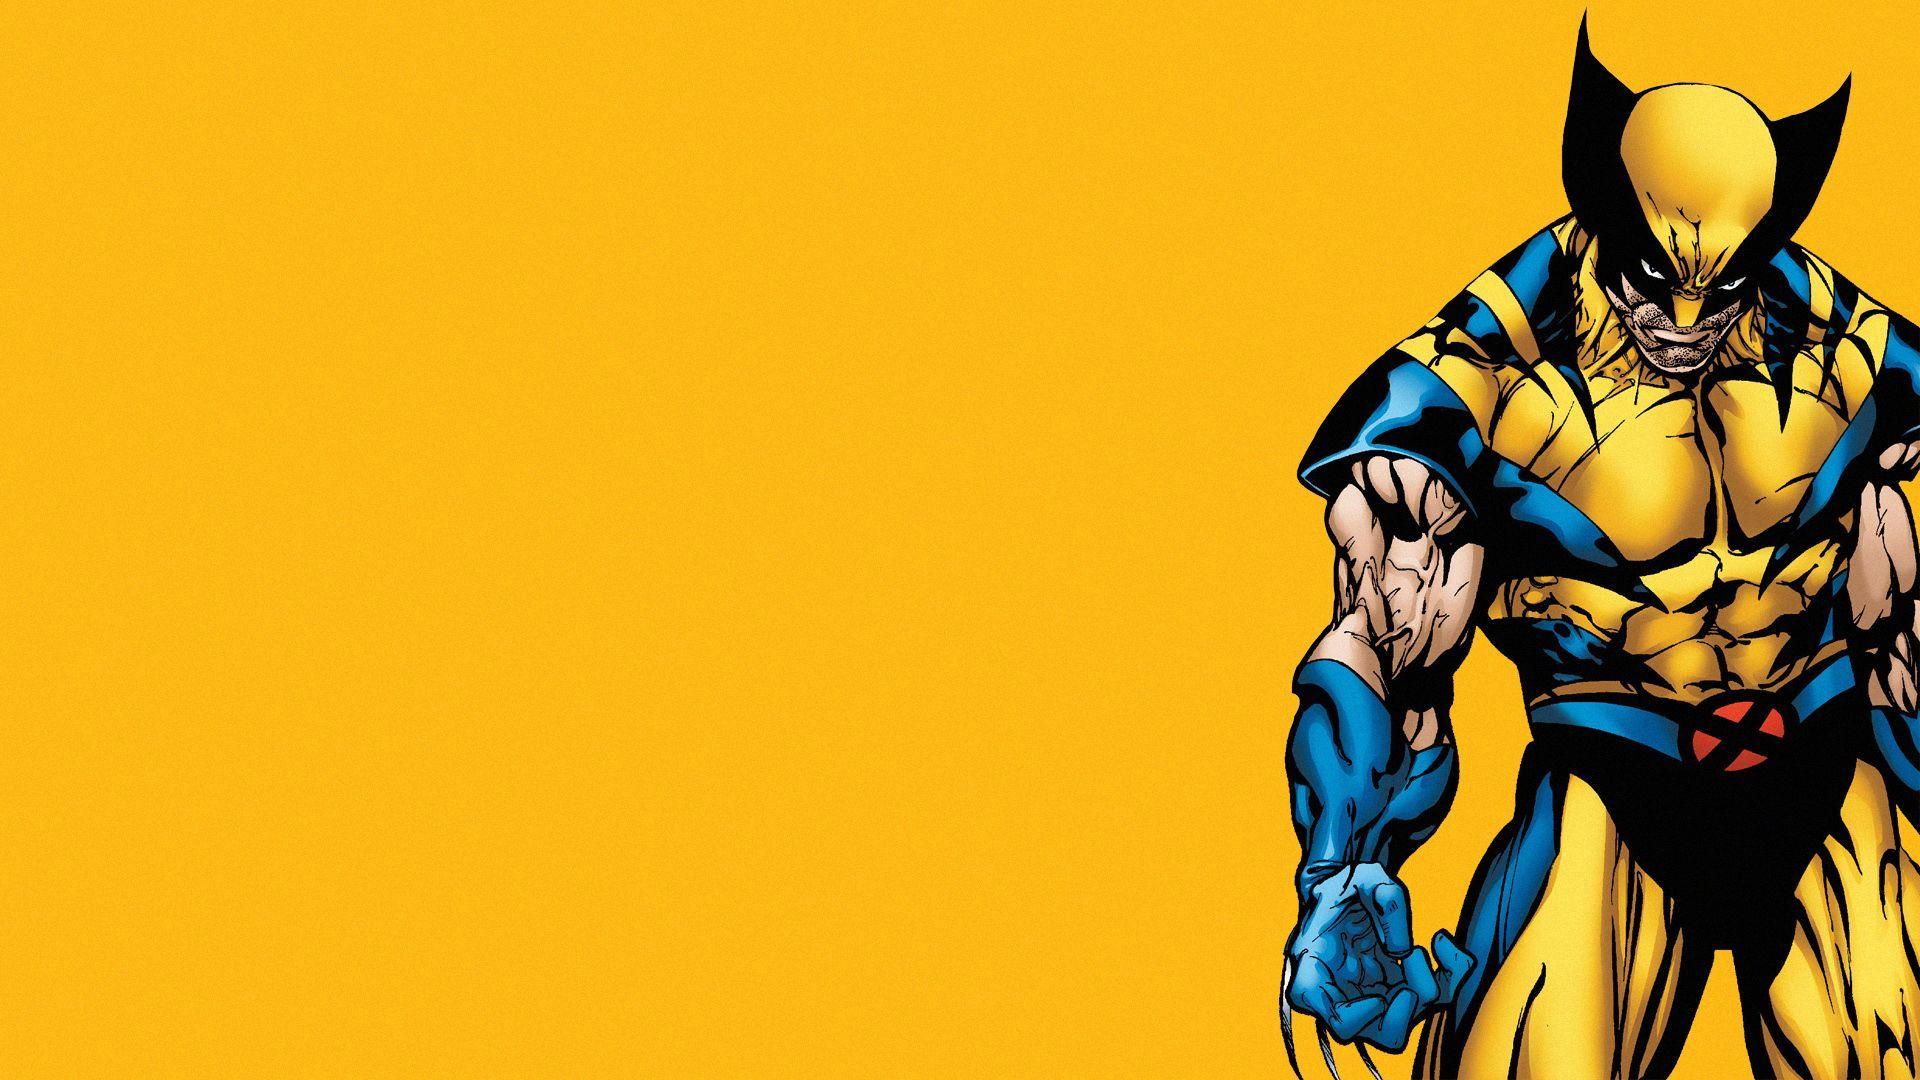 Wolverine Wallpaper. Wolverine comic, Wolverine comic wallpaper, Wolverine image